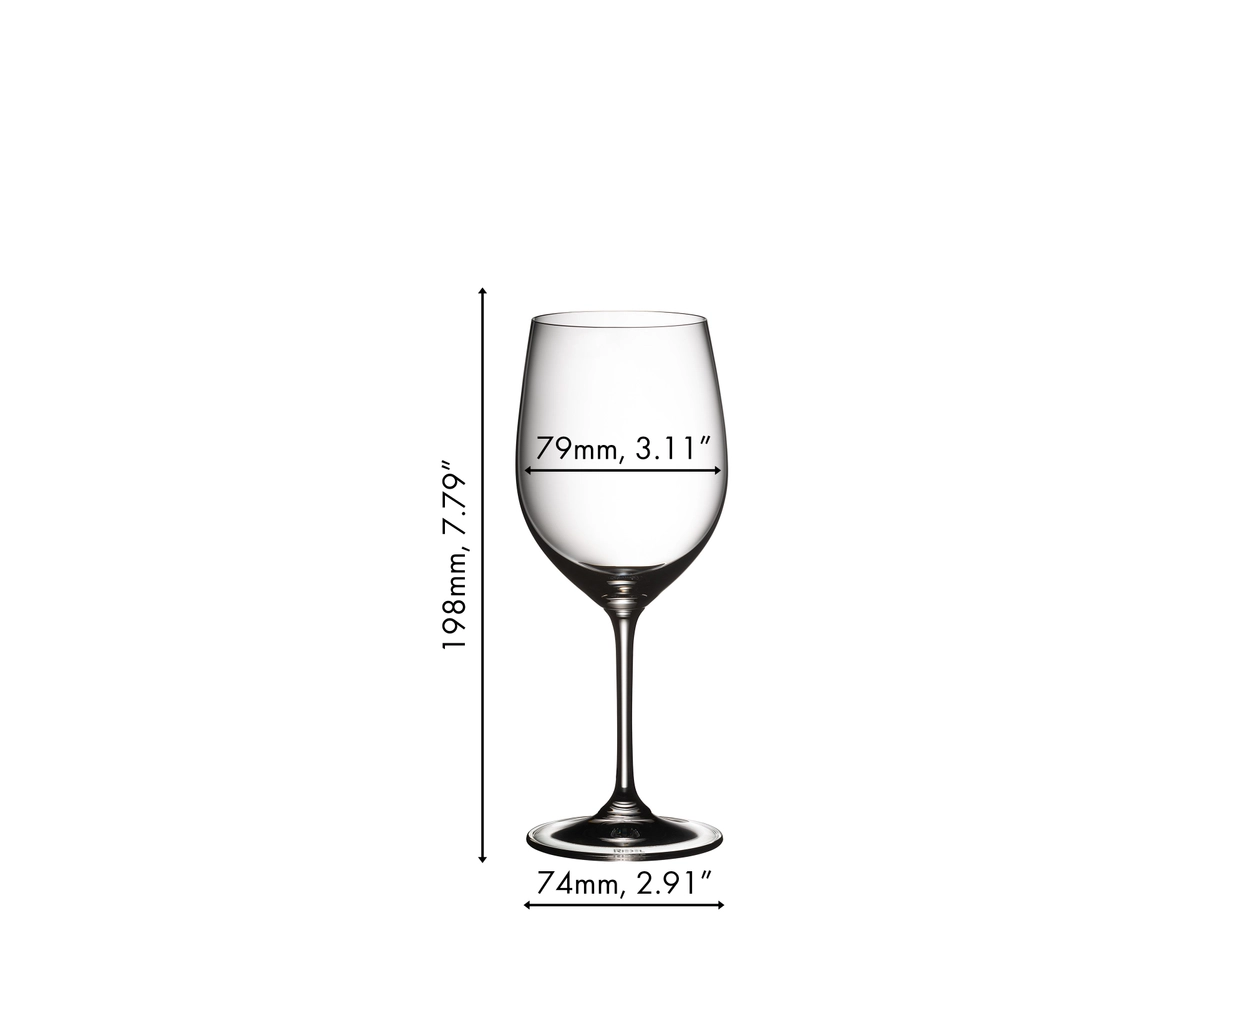 Riedel Vinum Goblets Chardonnay, Set of 2 glasses